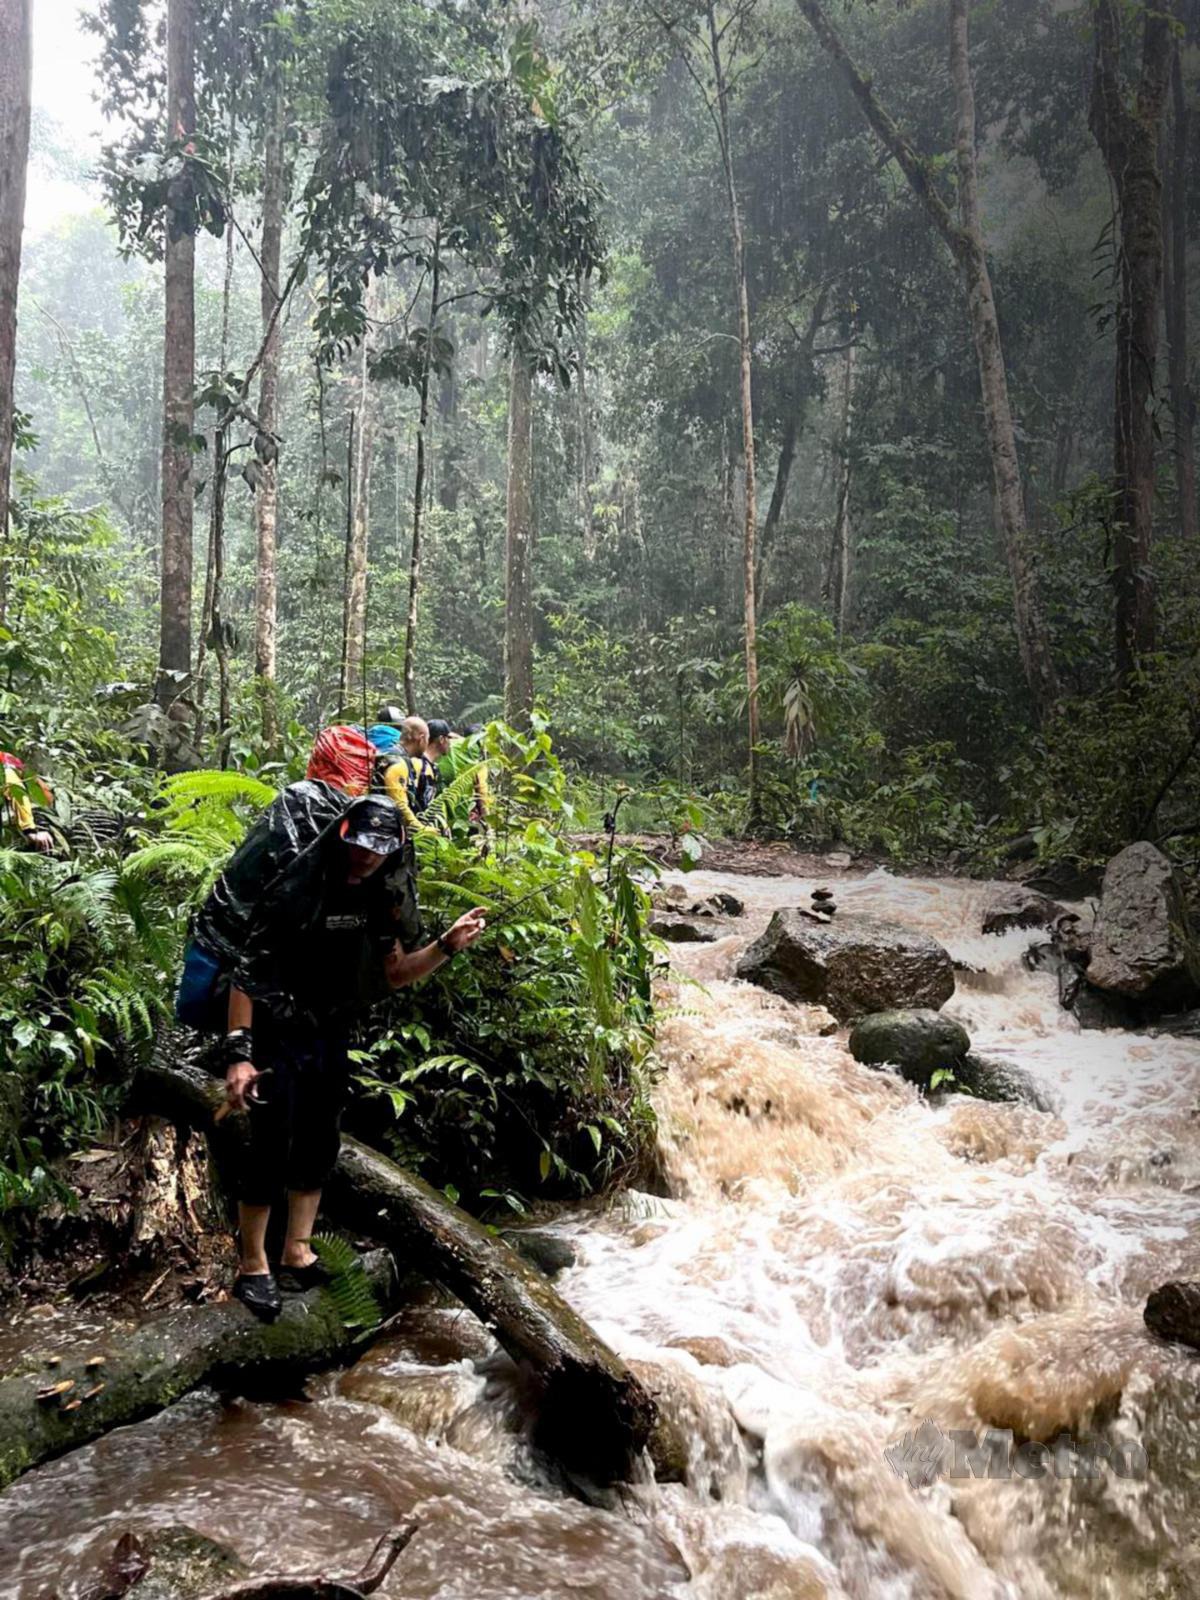 AIR sungai yang naik akibat hujan lebat menjadi cabaran untuk meneruskan aktiviti pendakian.